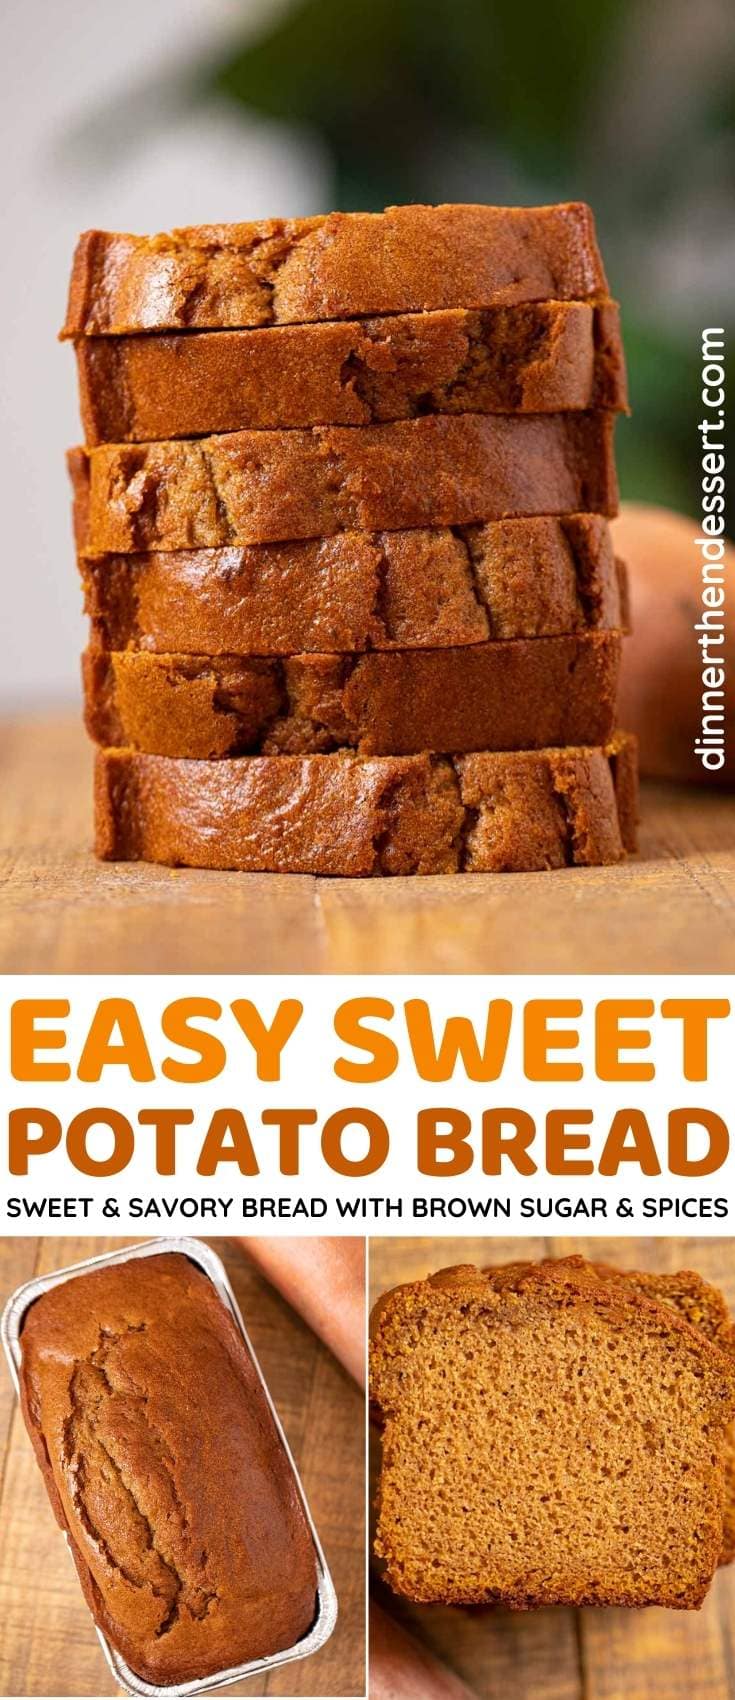 https://dinnerthendessert.com/wp-content/uploads/2020/09/Sweet-Potato-Bread-L.jpg